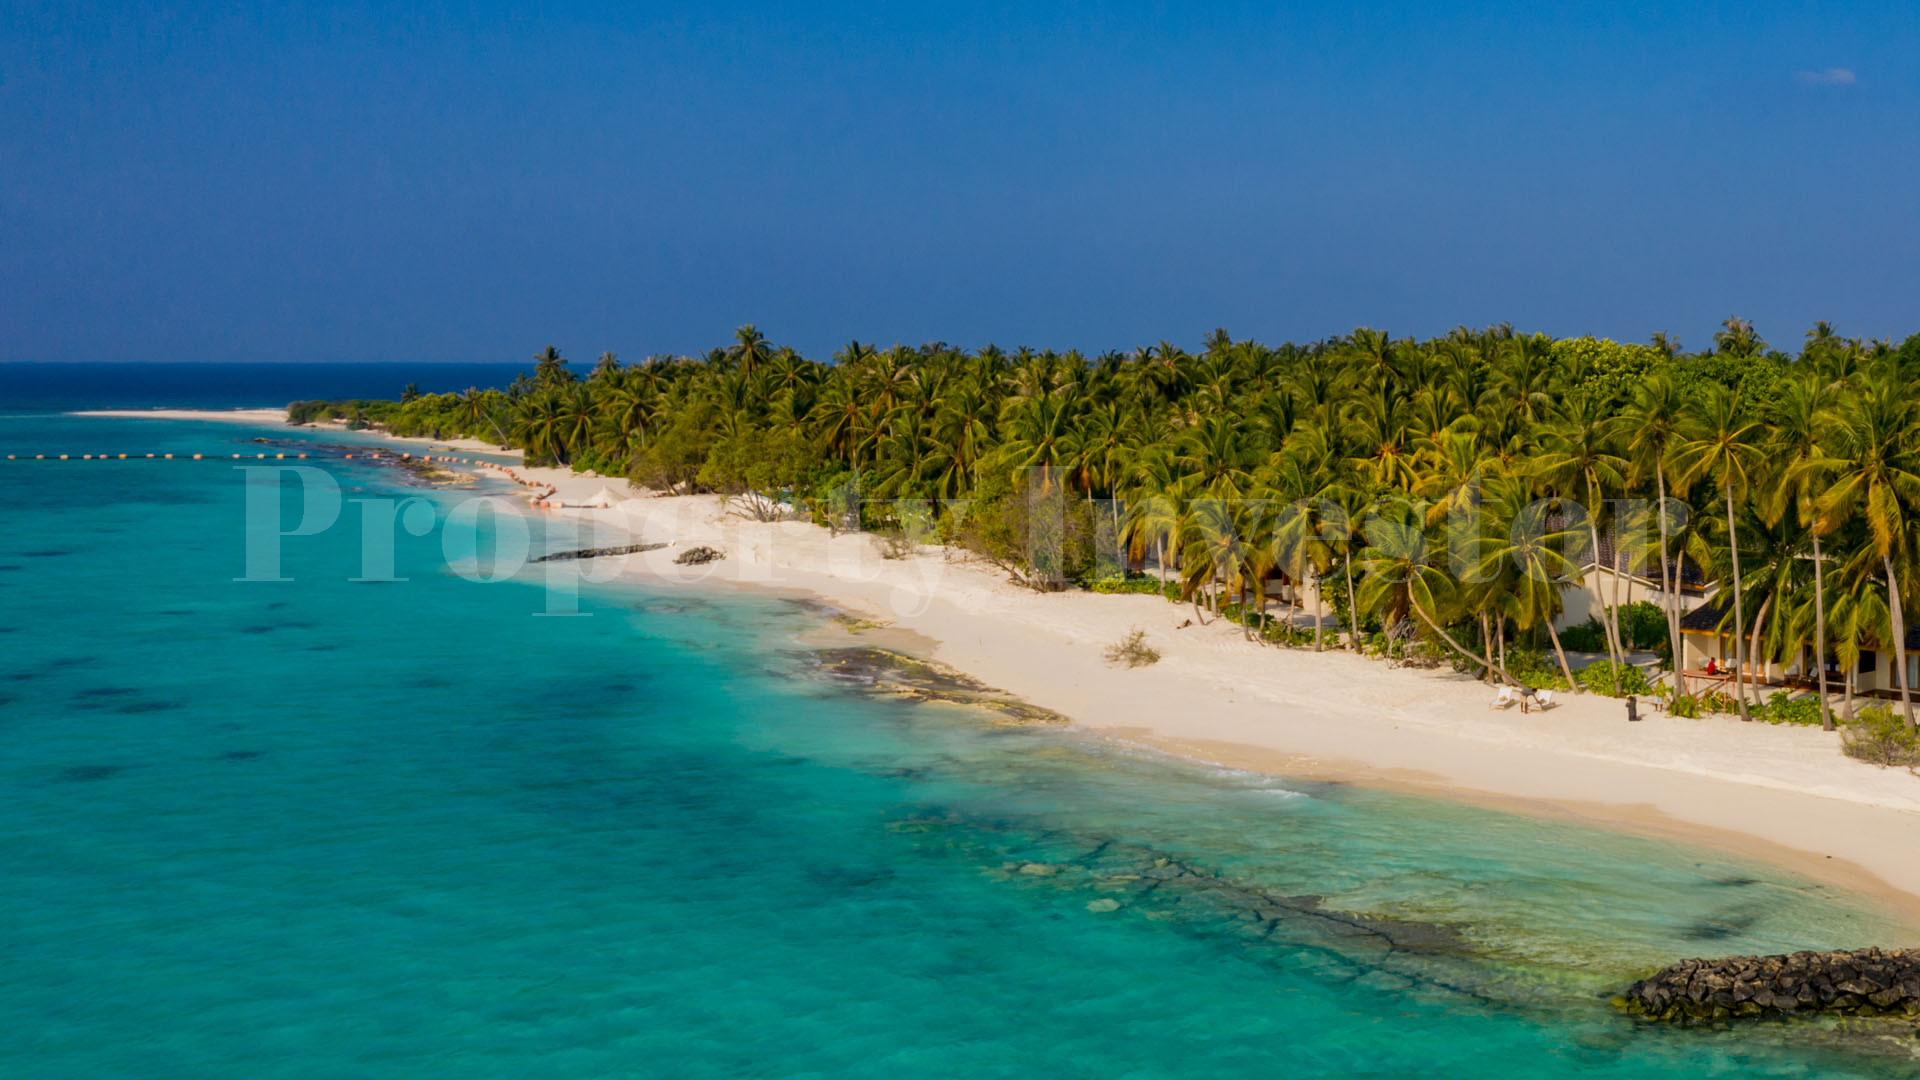 Luxury 60 Villa Island Resort for Sale in the Maldives